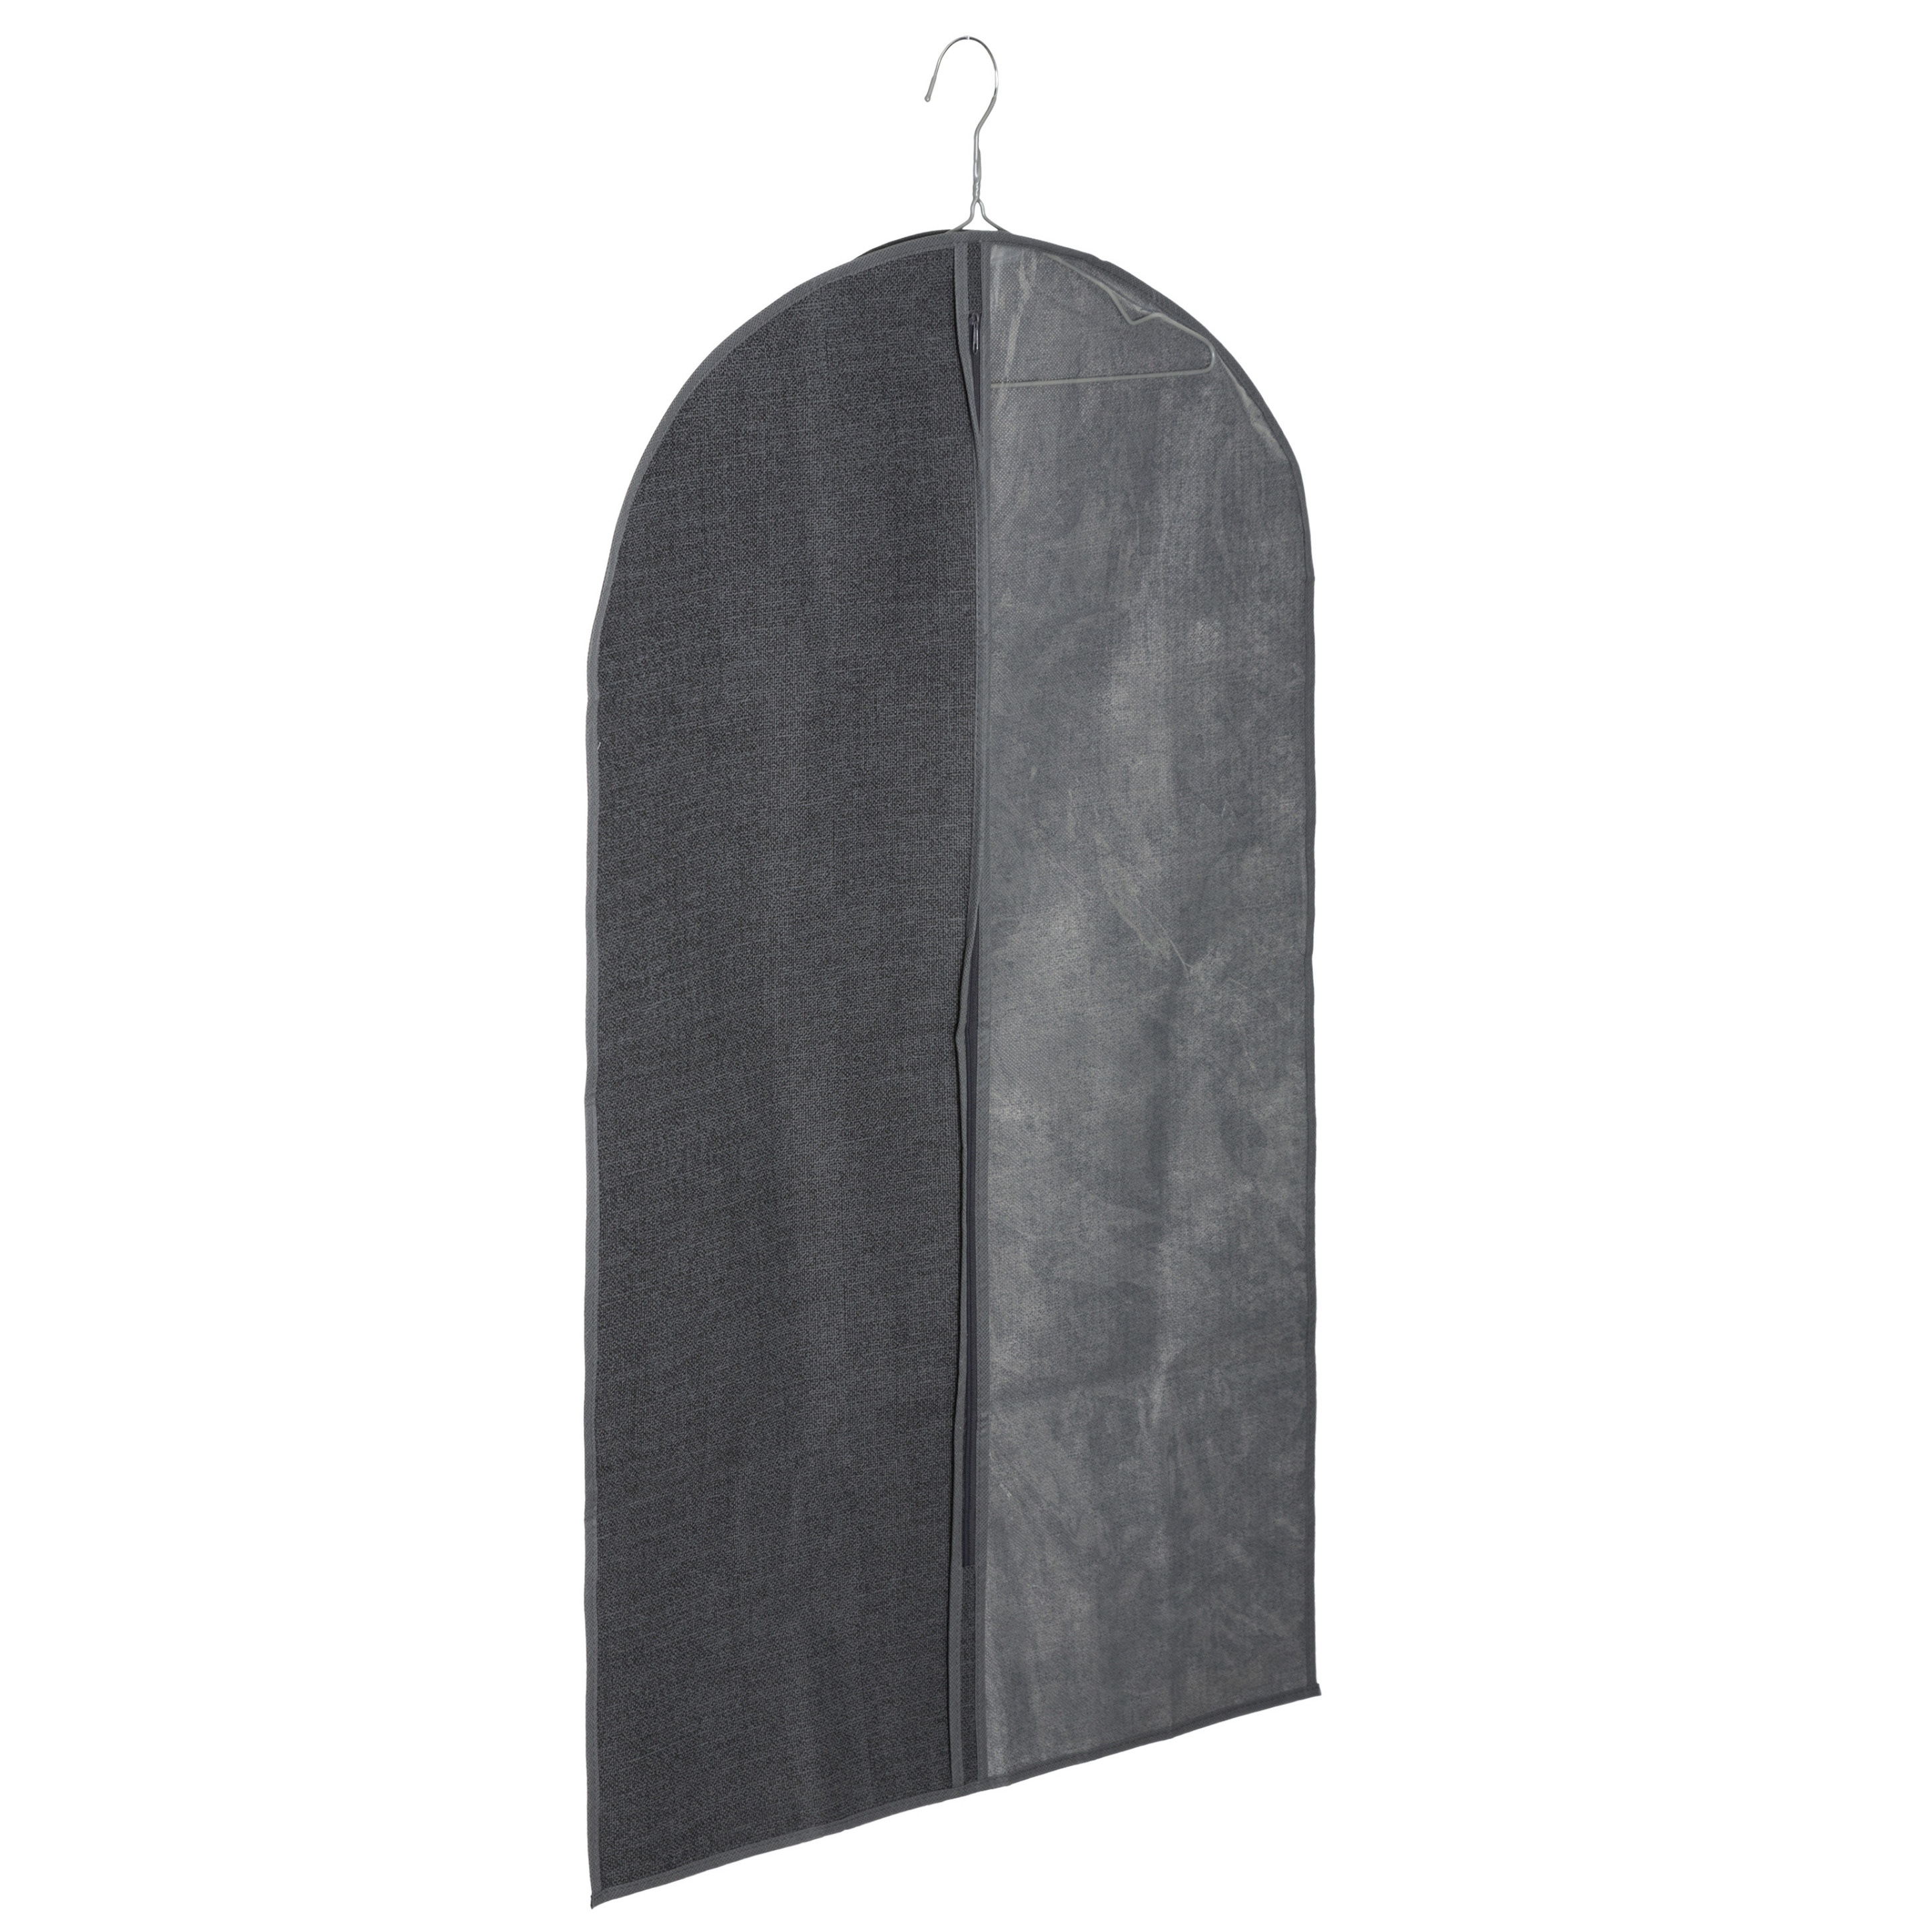 Kleding-beschermhoes linnen grijs 100 cm